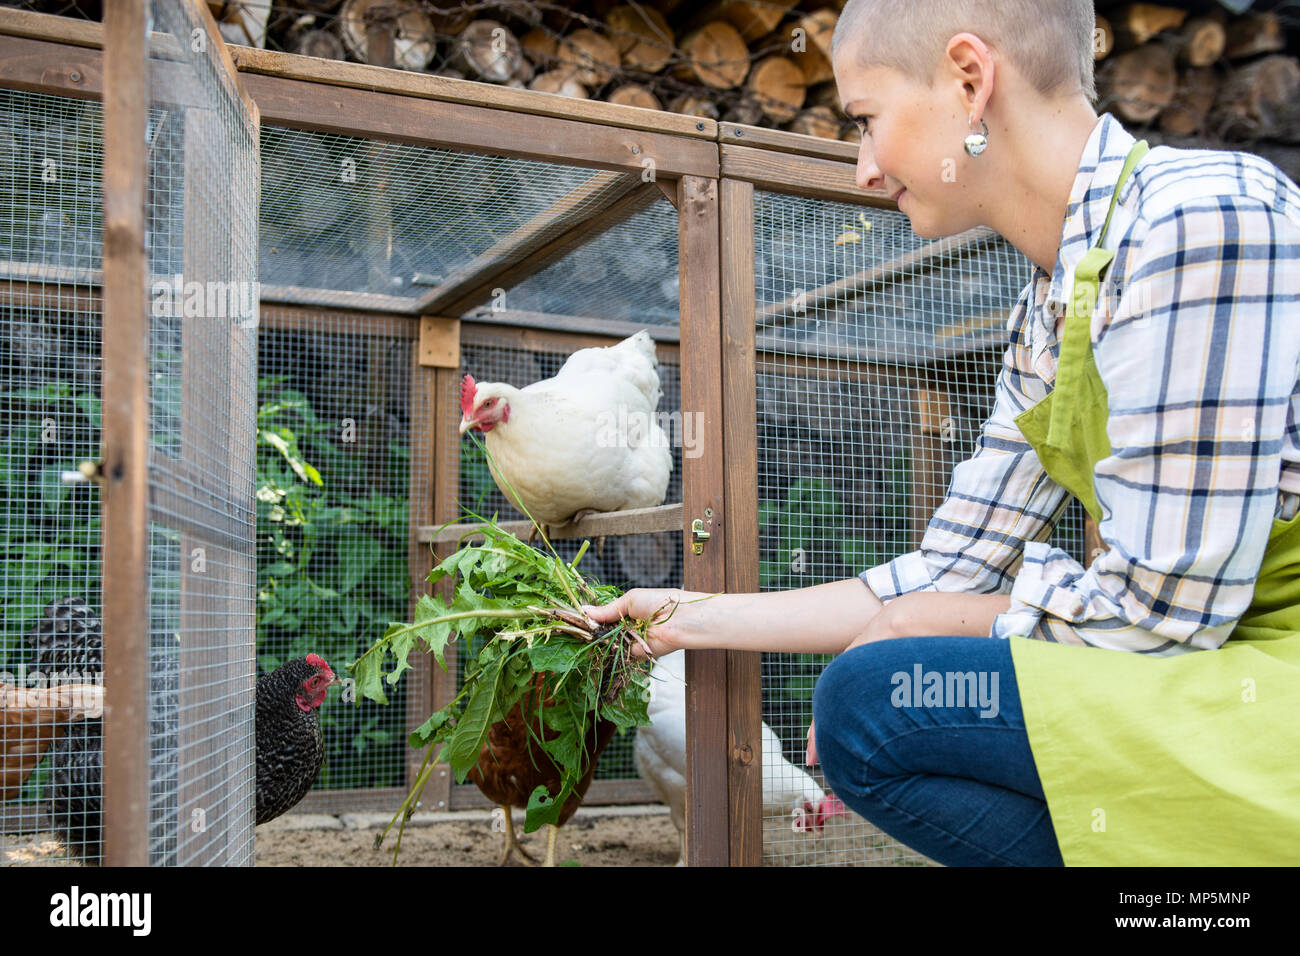 Junge Frau ihre freie Hühner füttern. Ei Legehennen und junge Frau Bauer. Gesunde organische Essen Lifestyle. Nachhaltige Landwirtschaft. Stockfoto